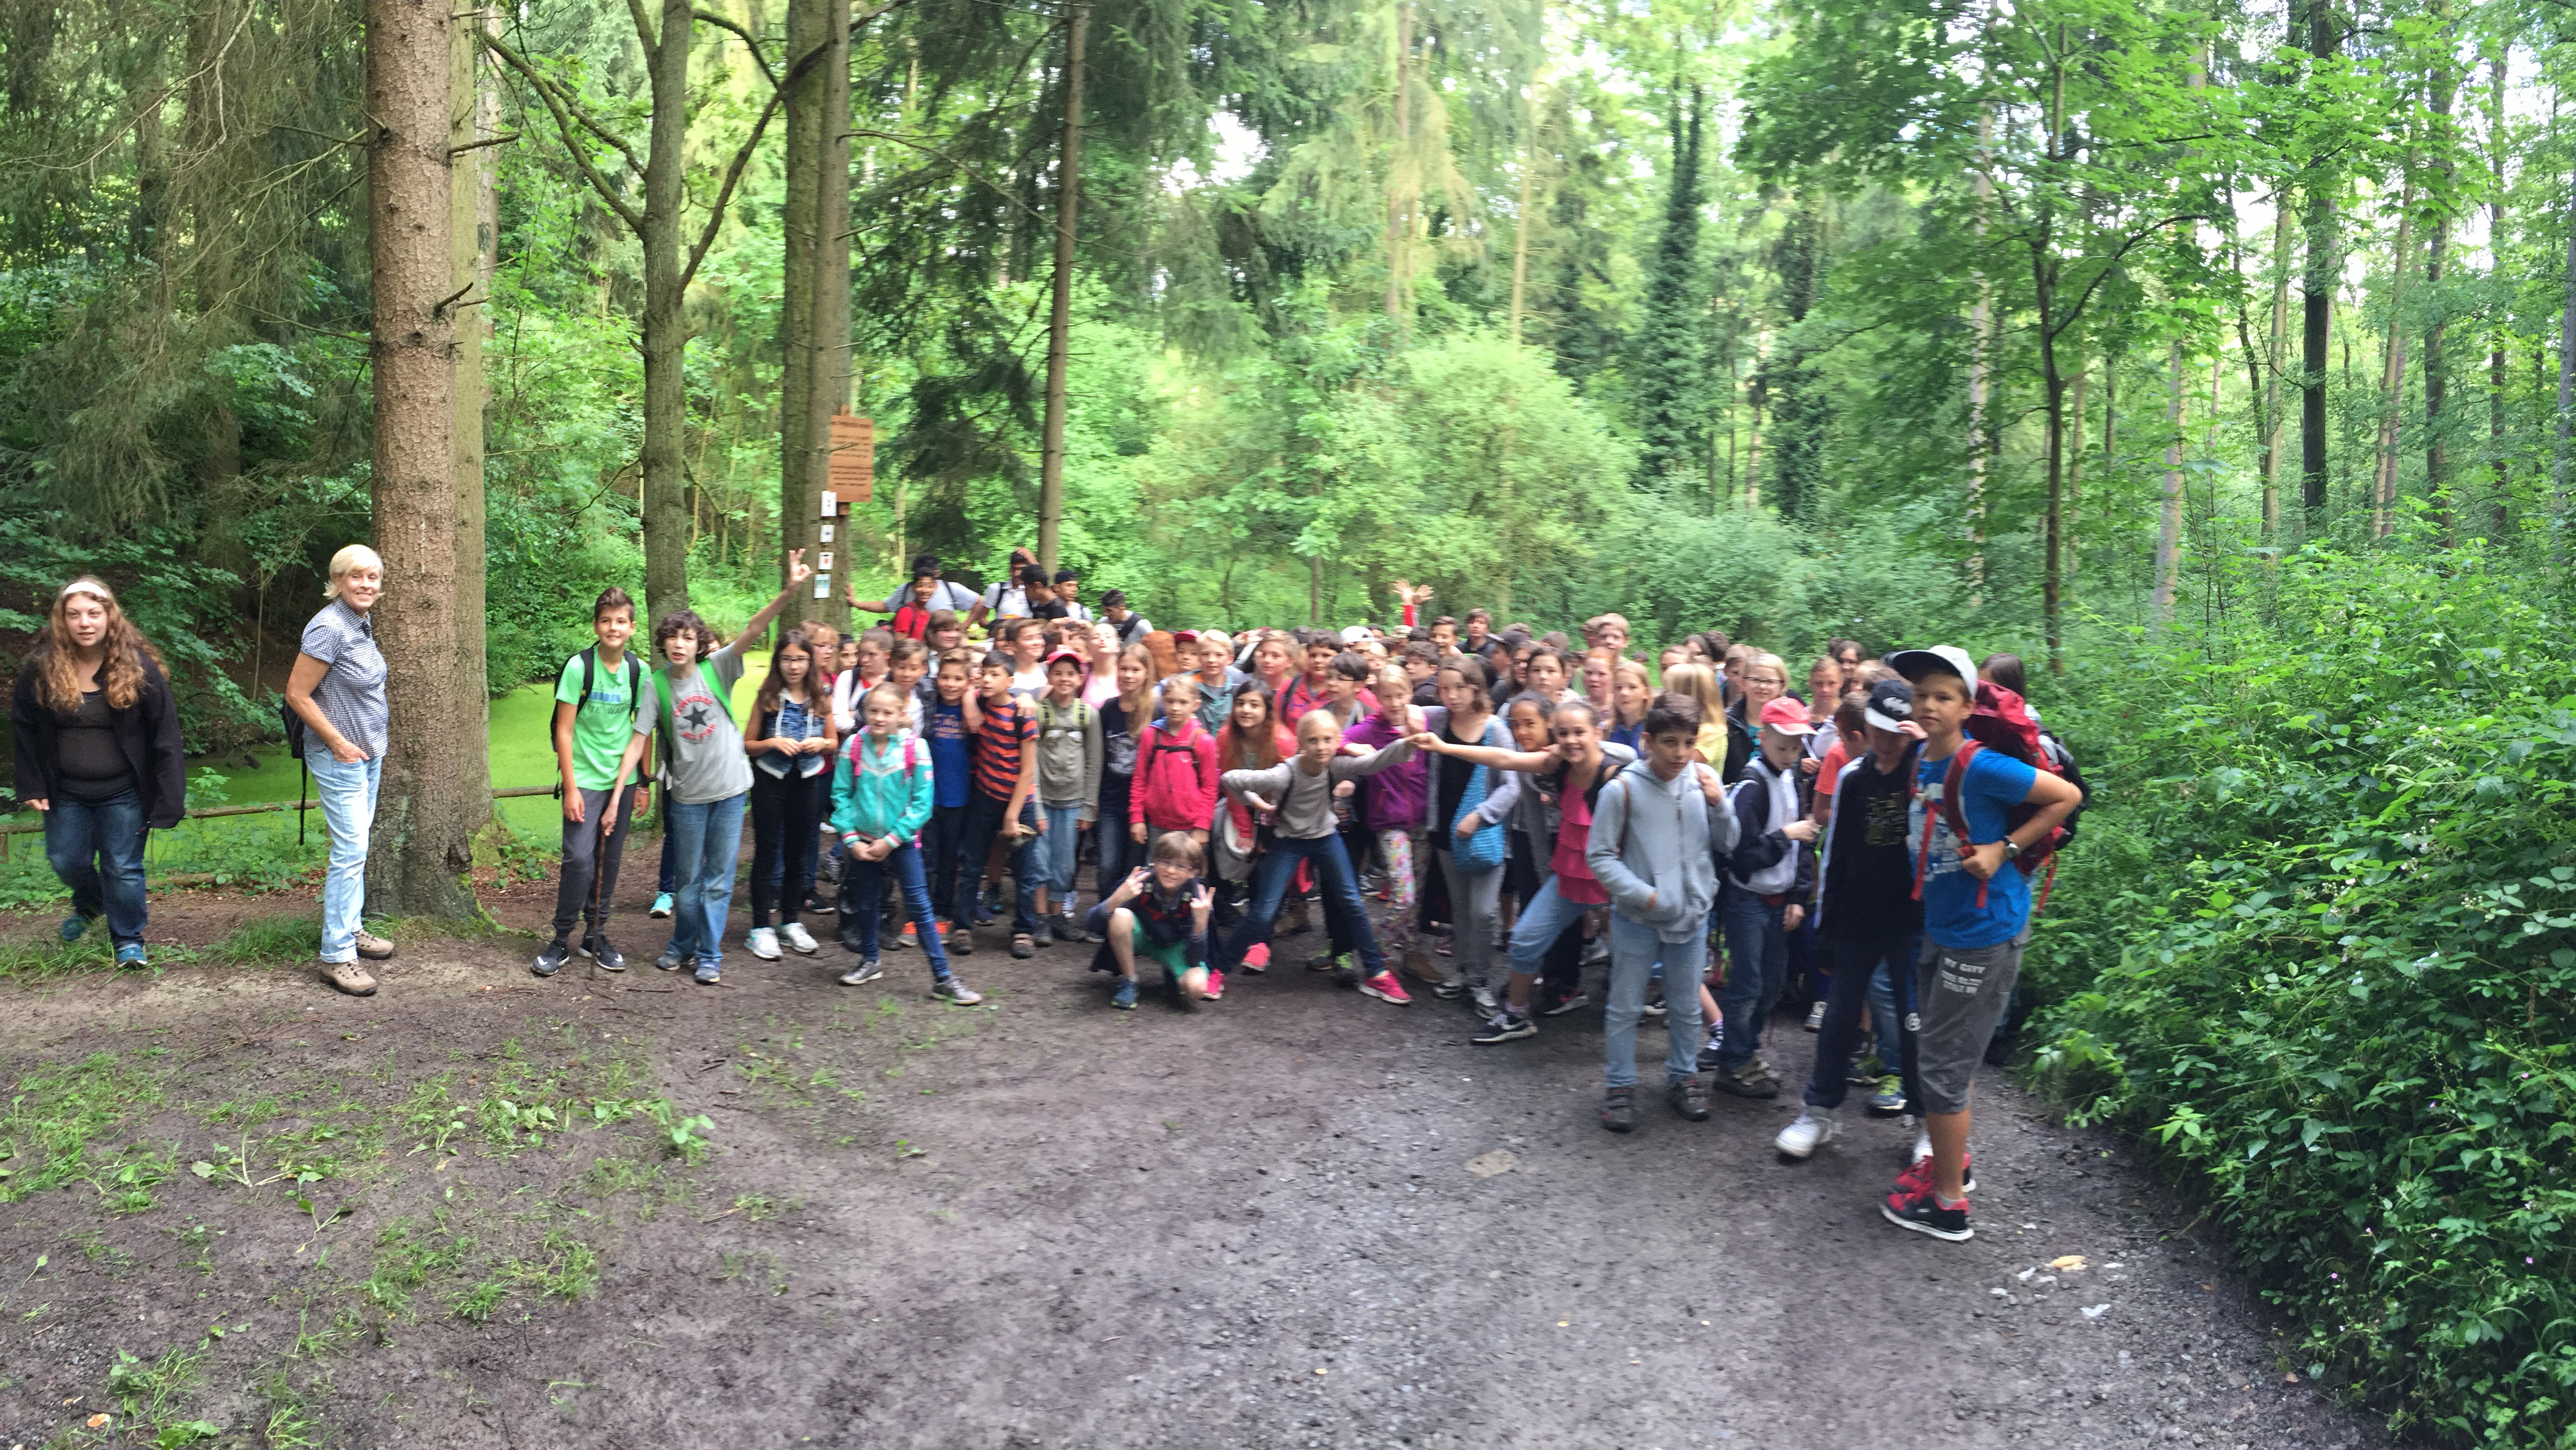  Schulkindergruppe im Wald 